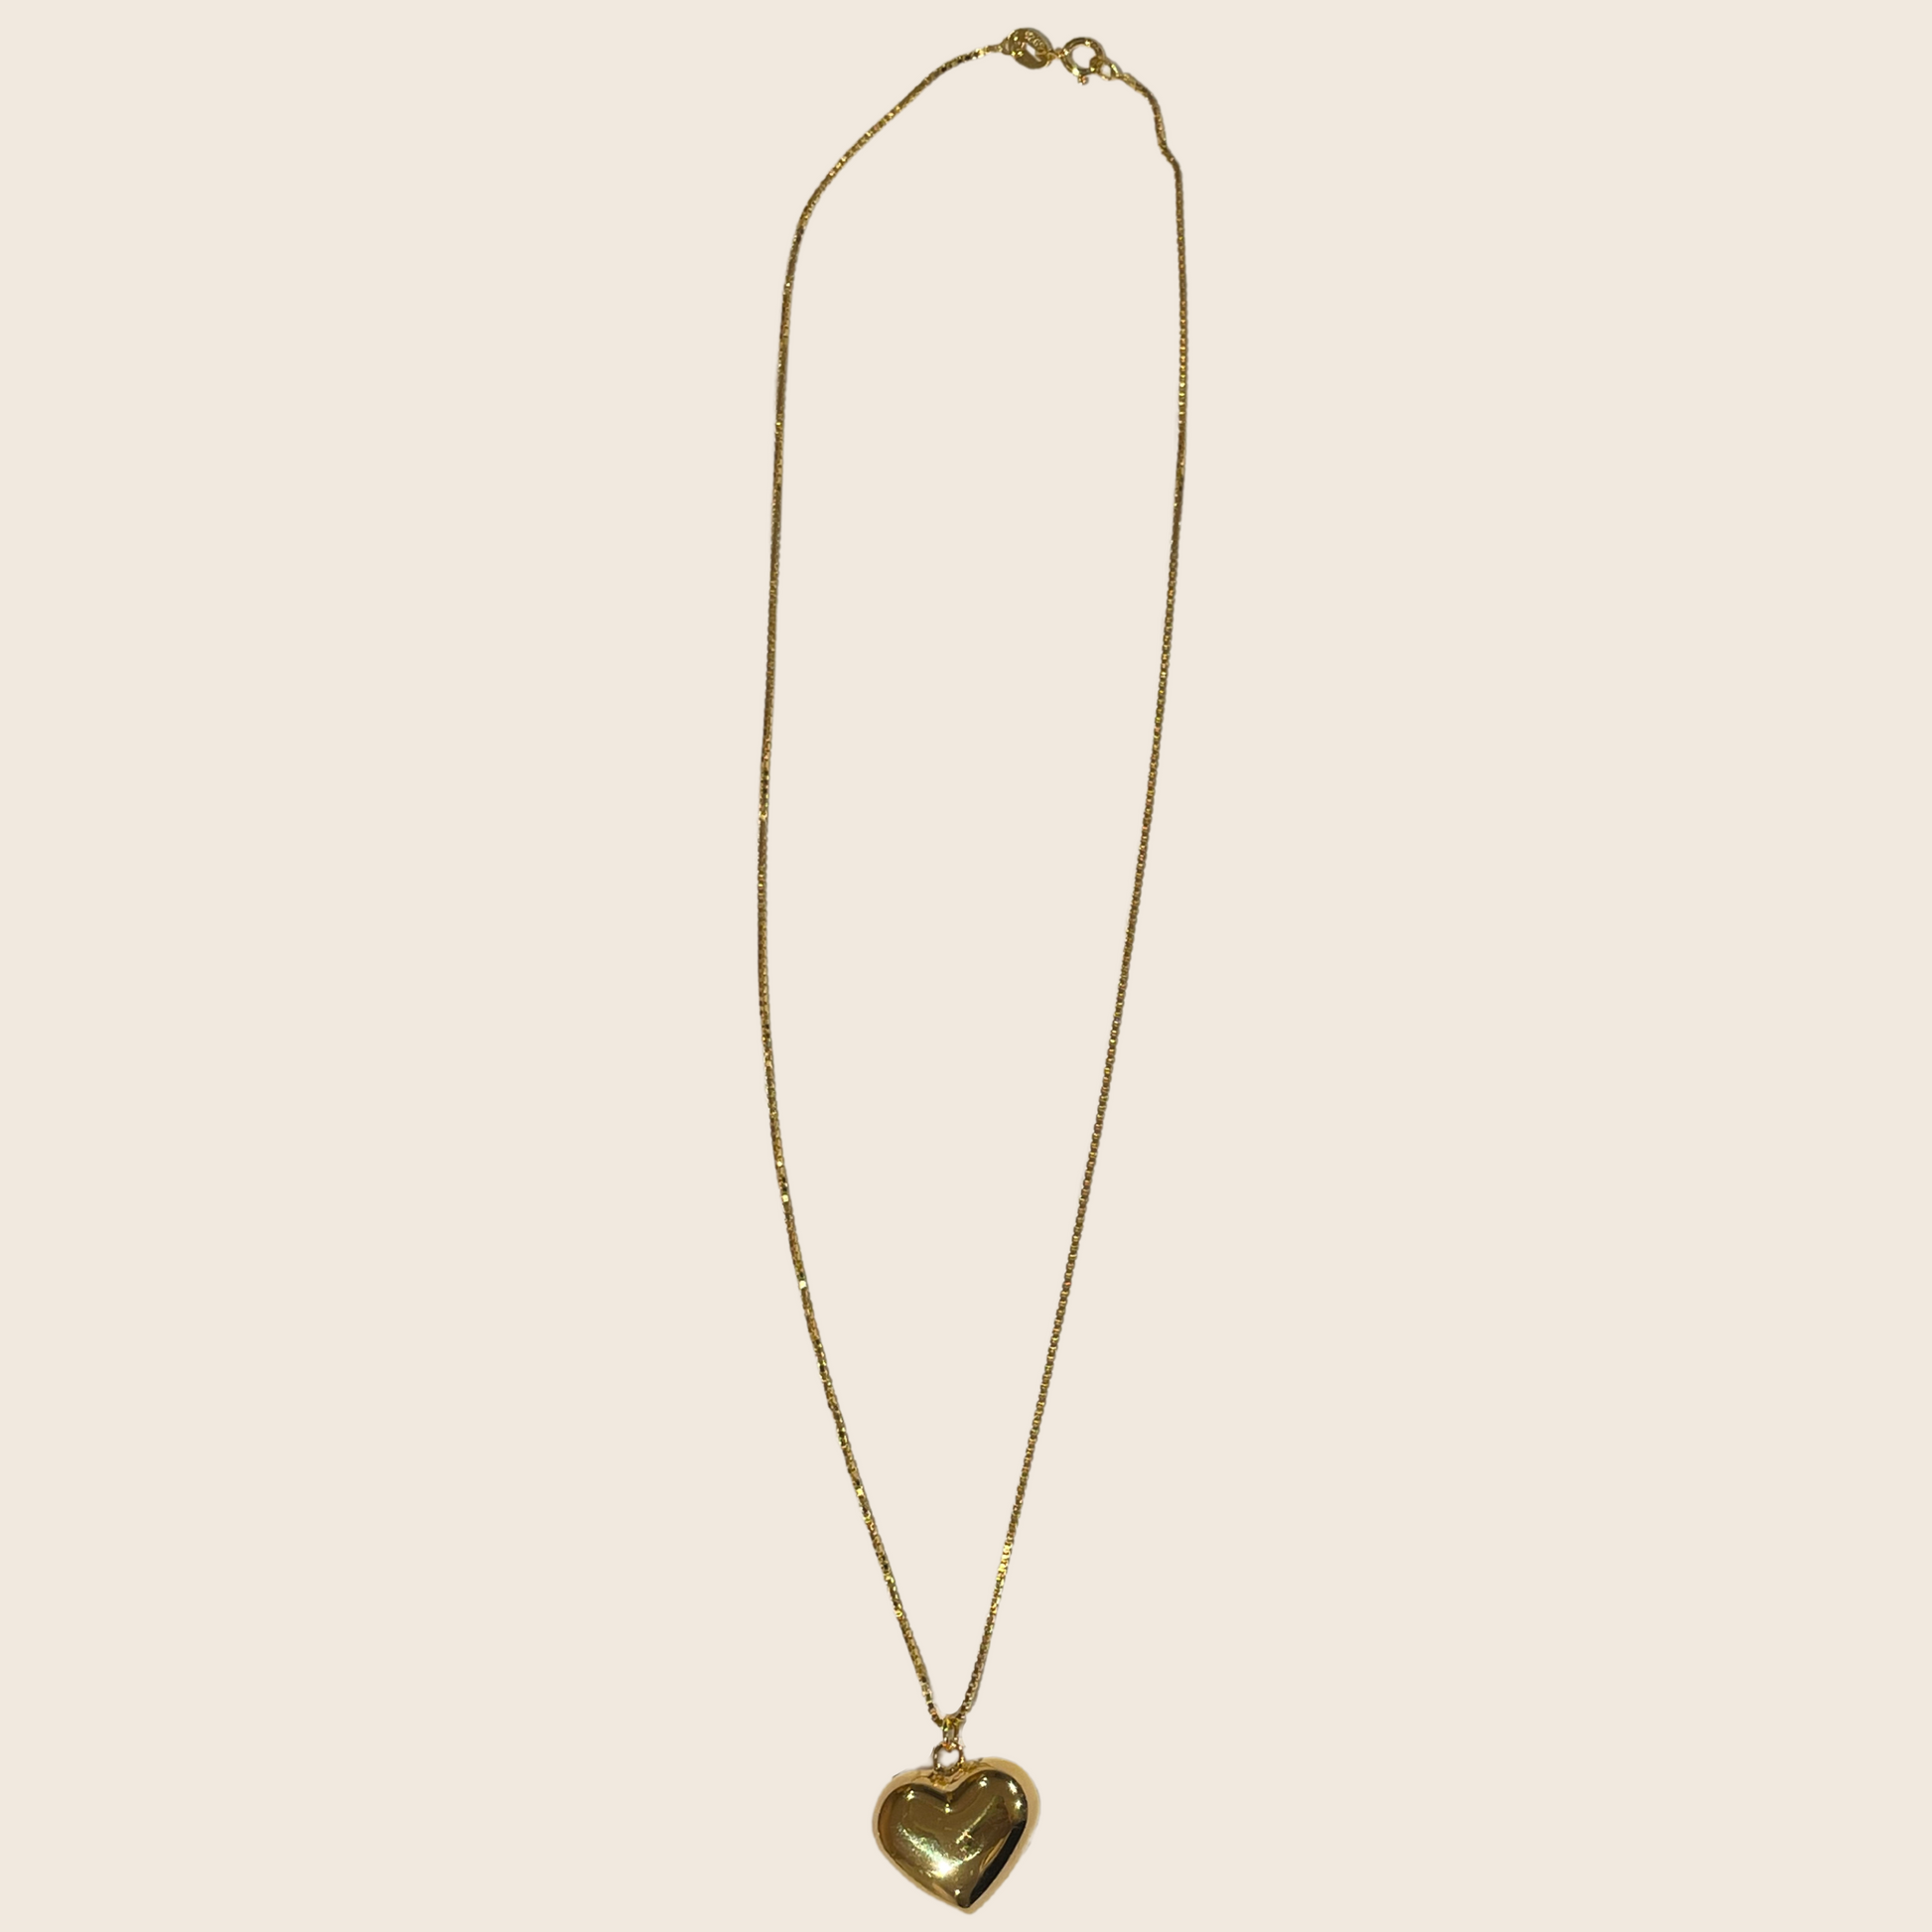 Lovers Heart Necklace - Lemon Lua Lovers Heart Necklace Lemon Lua Lemon Lua Lovers Heart Necklace Lovers Heart Necklace